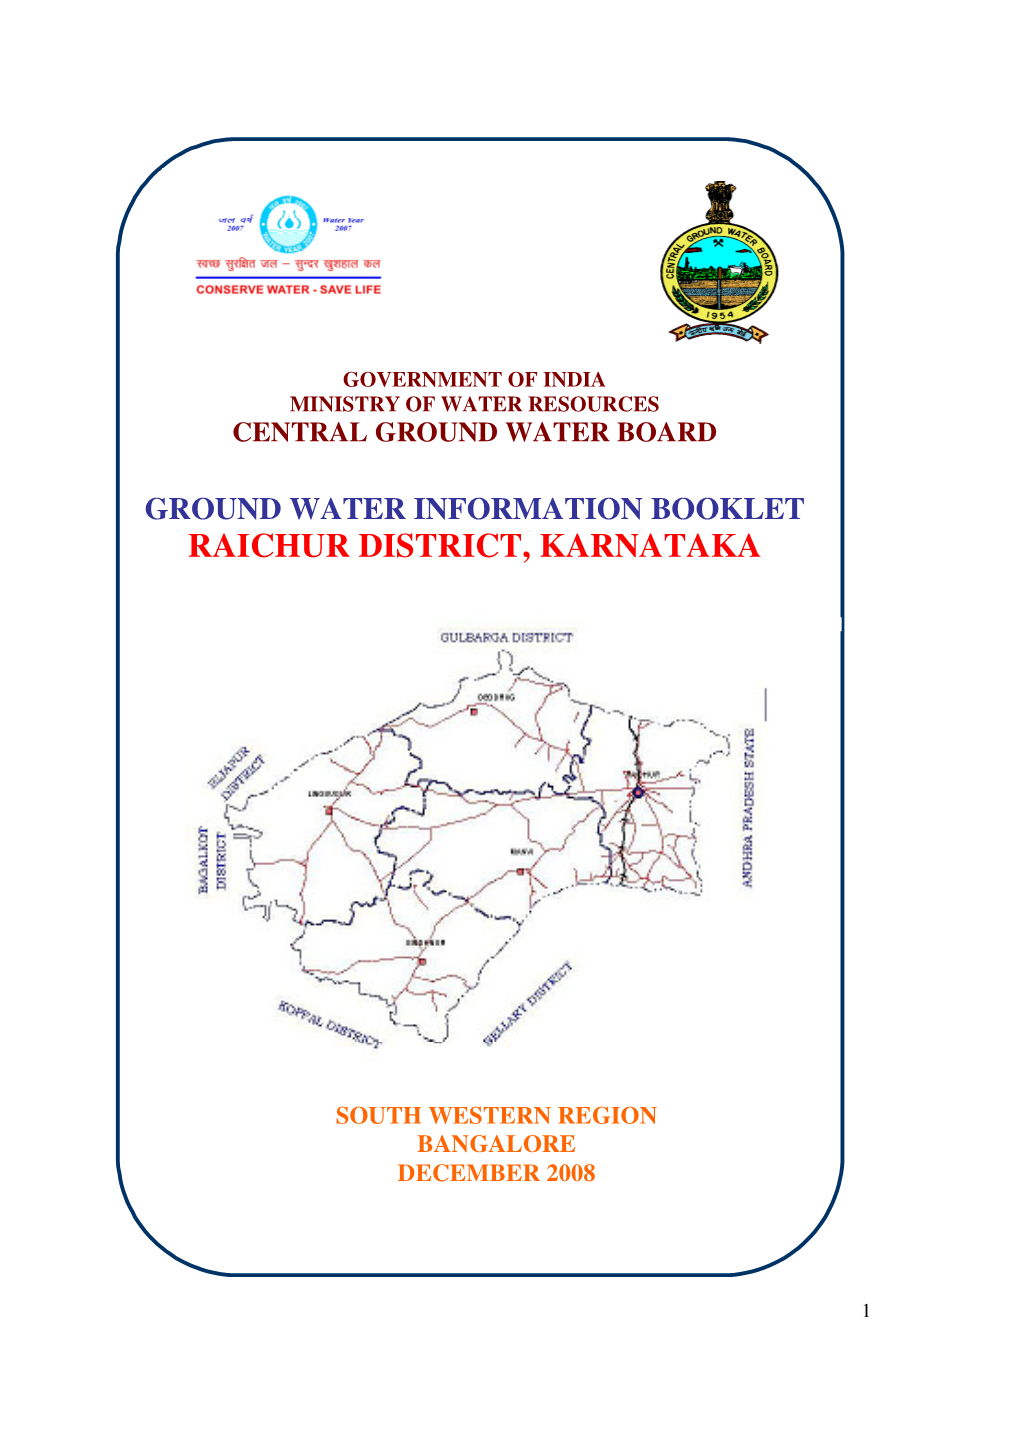 Raichur District, Karnataka